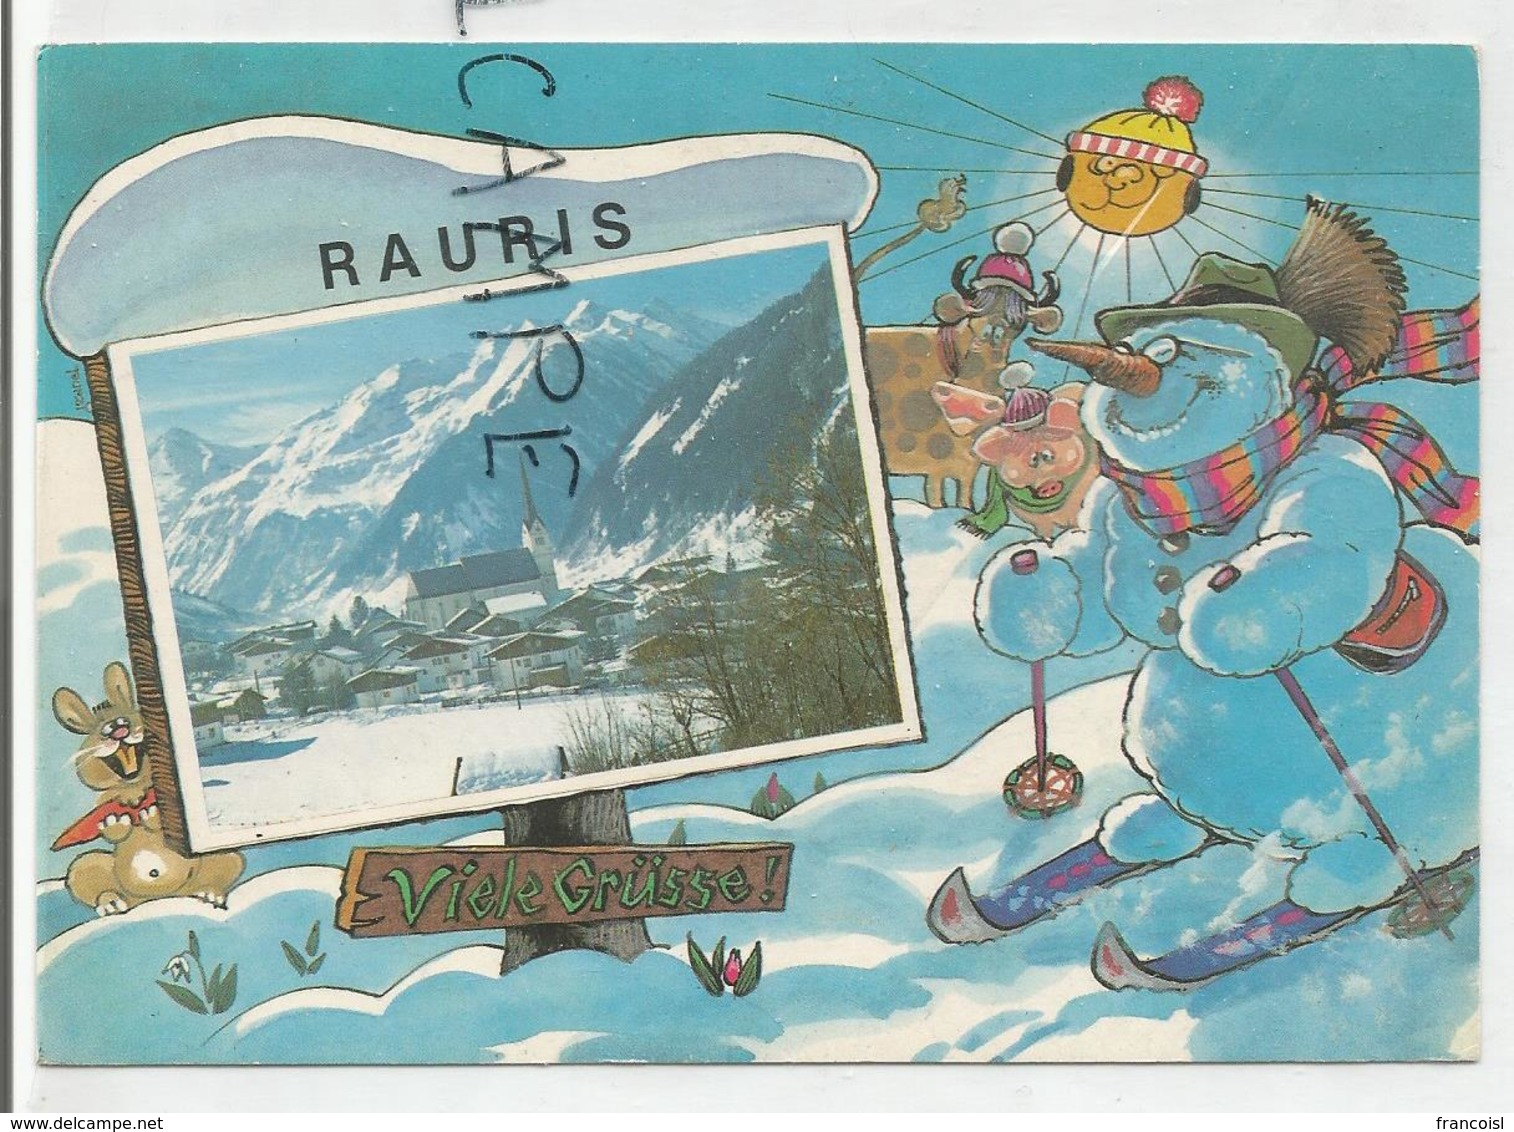 Bonhomme De Neige à Ski, Soleil Et Animaux. Village En Médaillon:" Viele Grüss" - Rauris